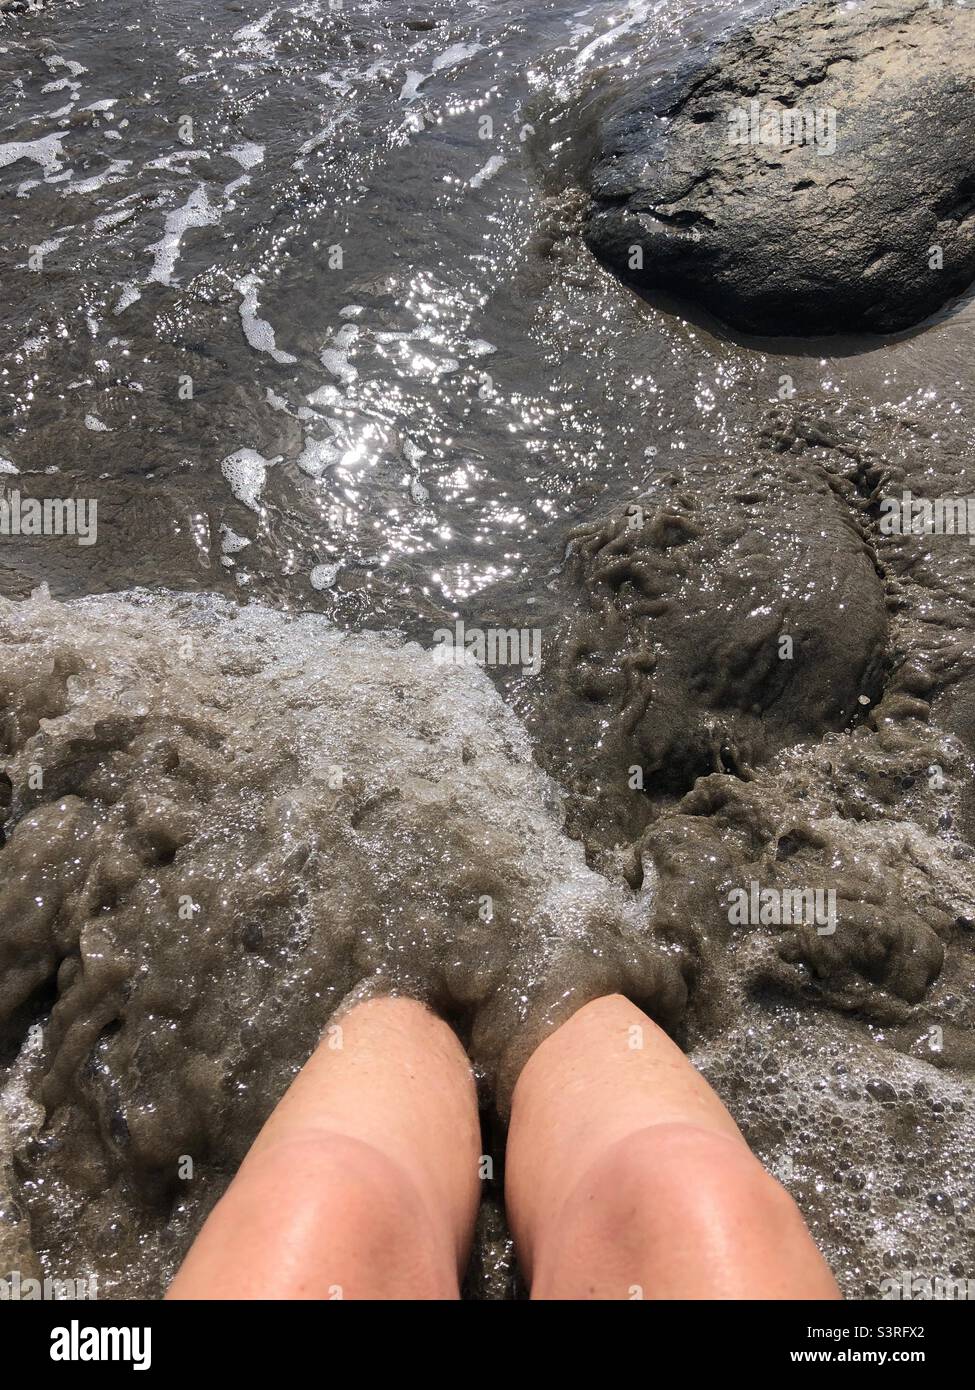 Eine Frau hat Füße, die vom Meer in Schlamm getaucht sind. Stockfoto